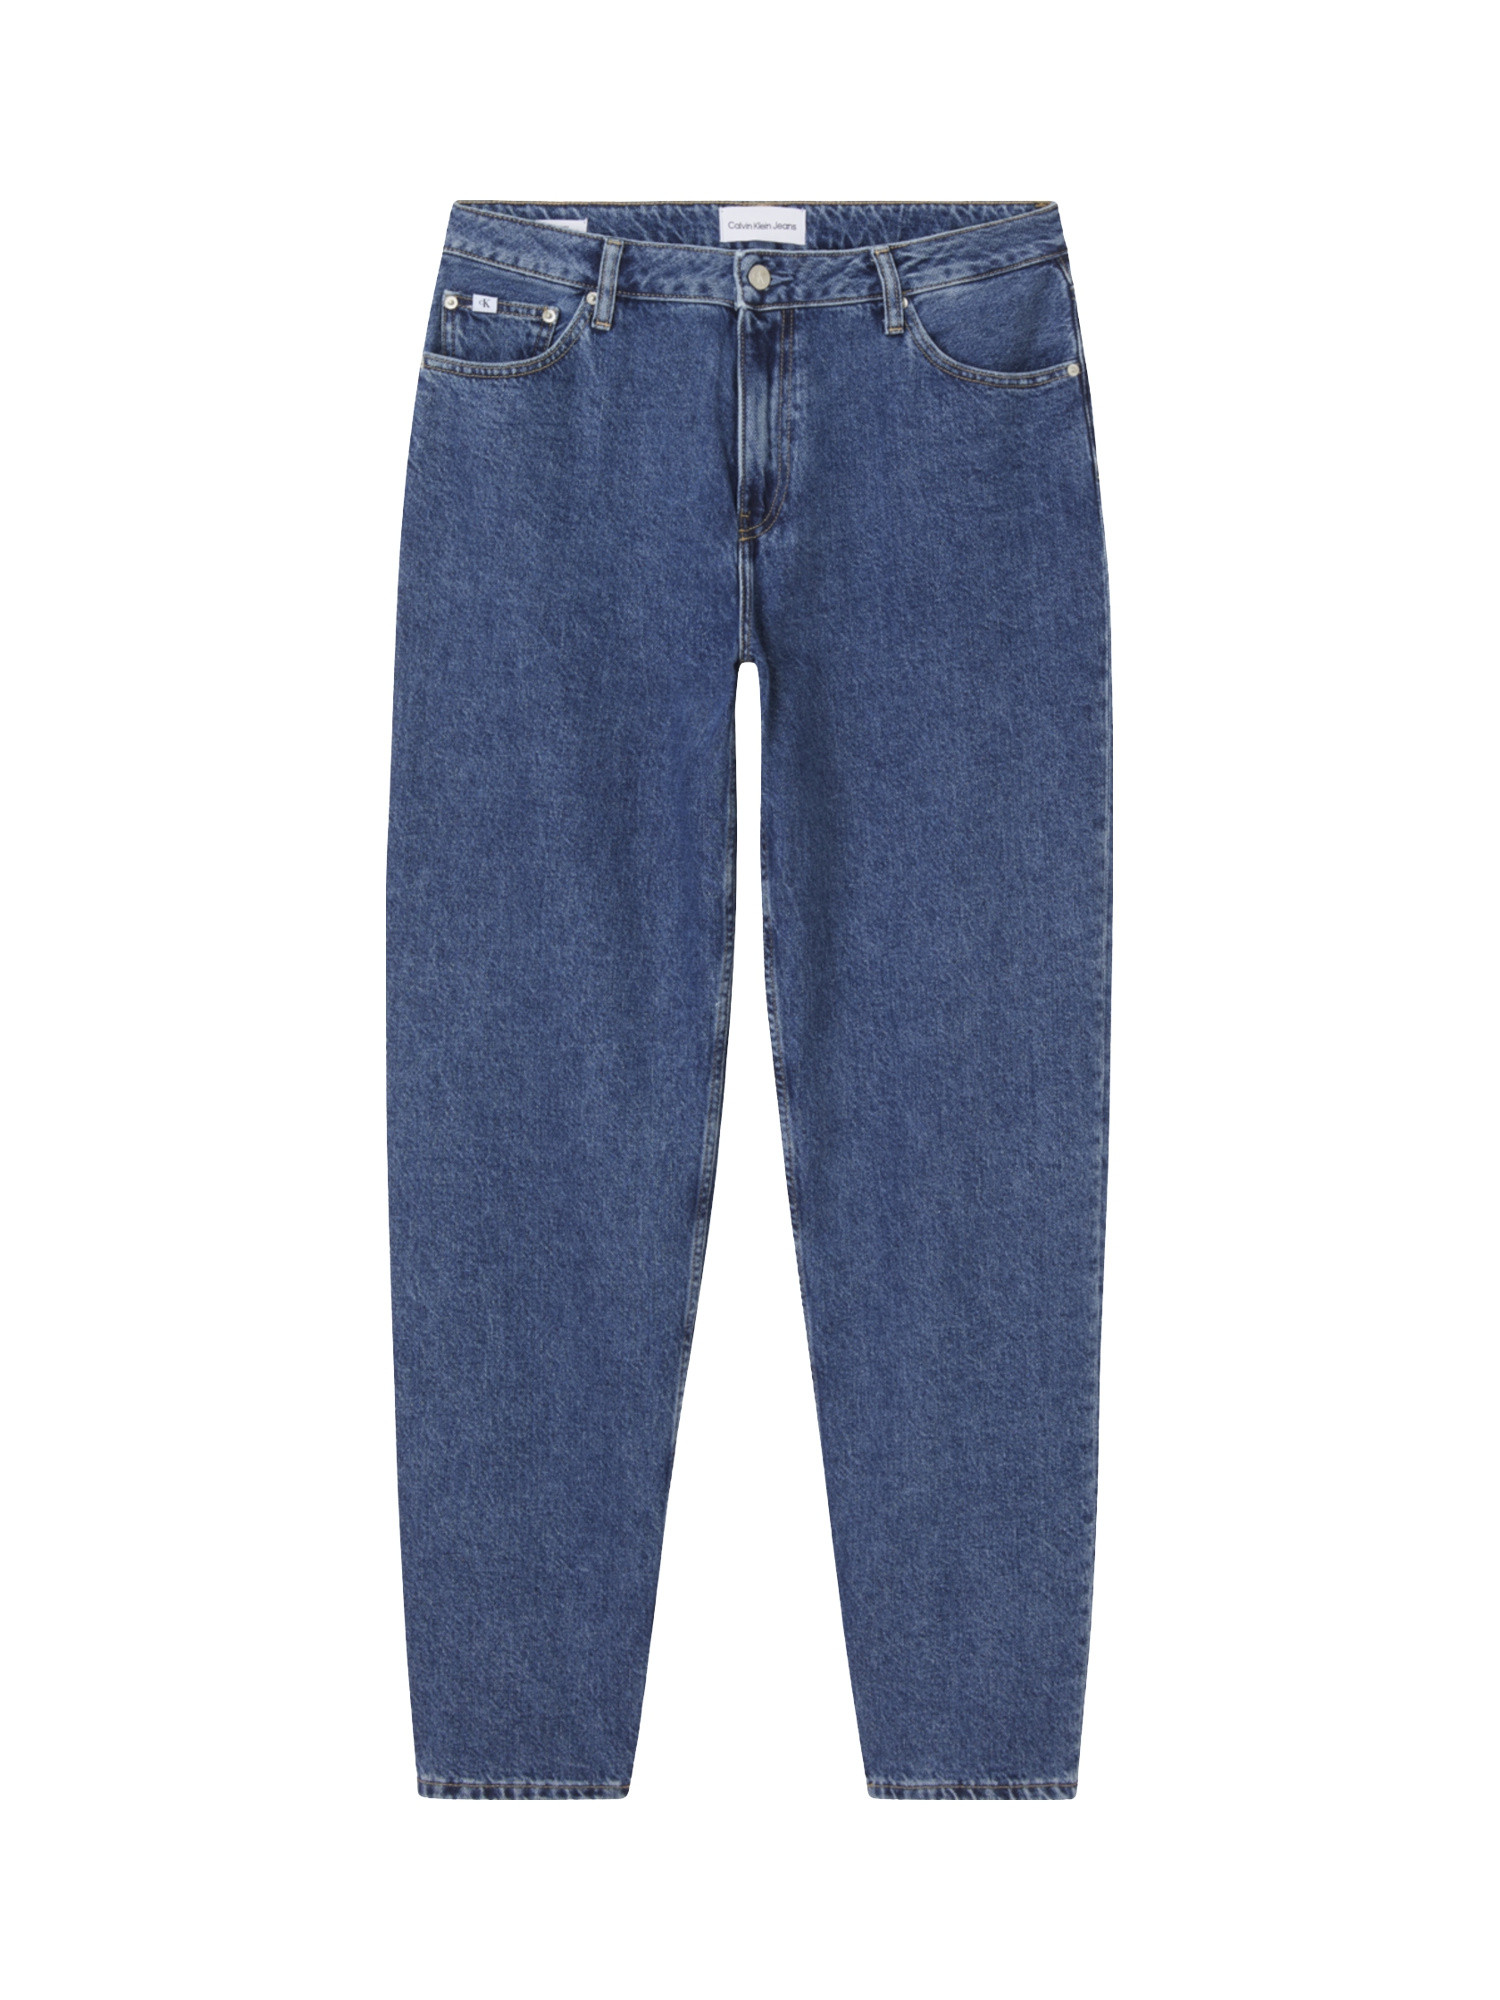 Jeans anni 90', Denim, large image number 0